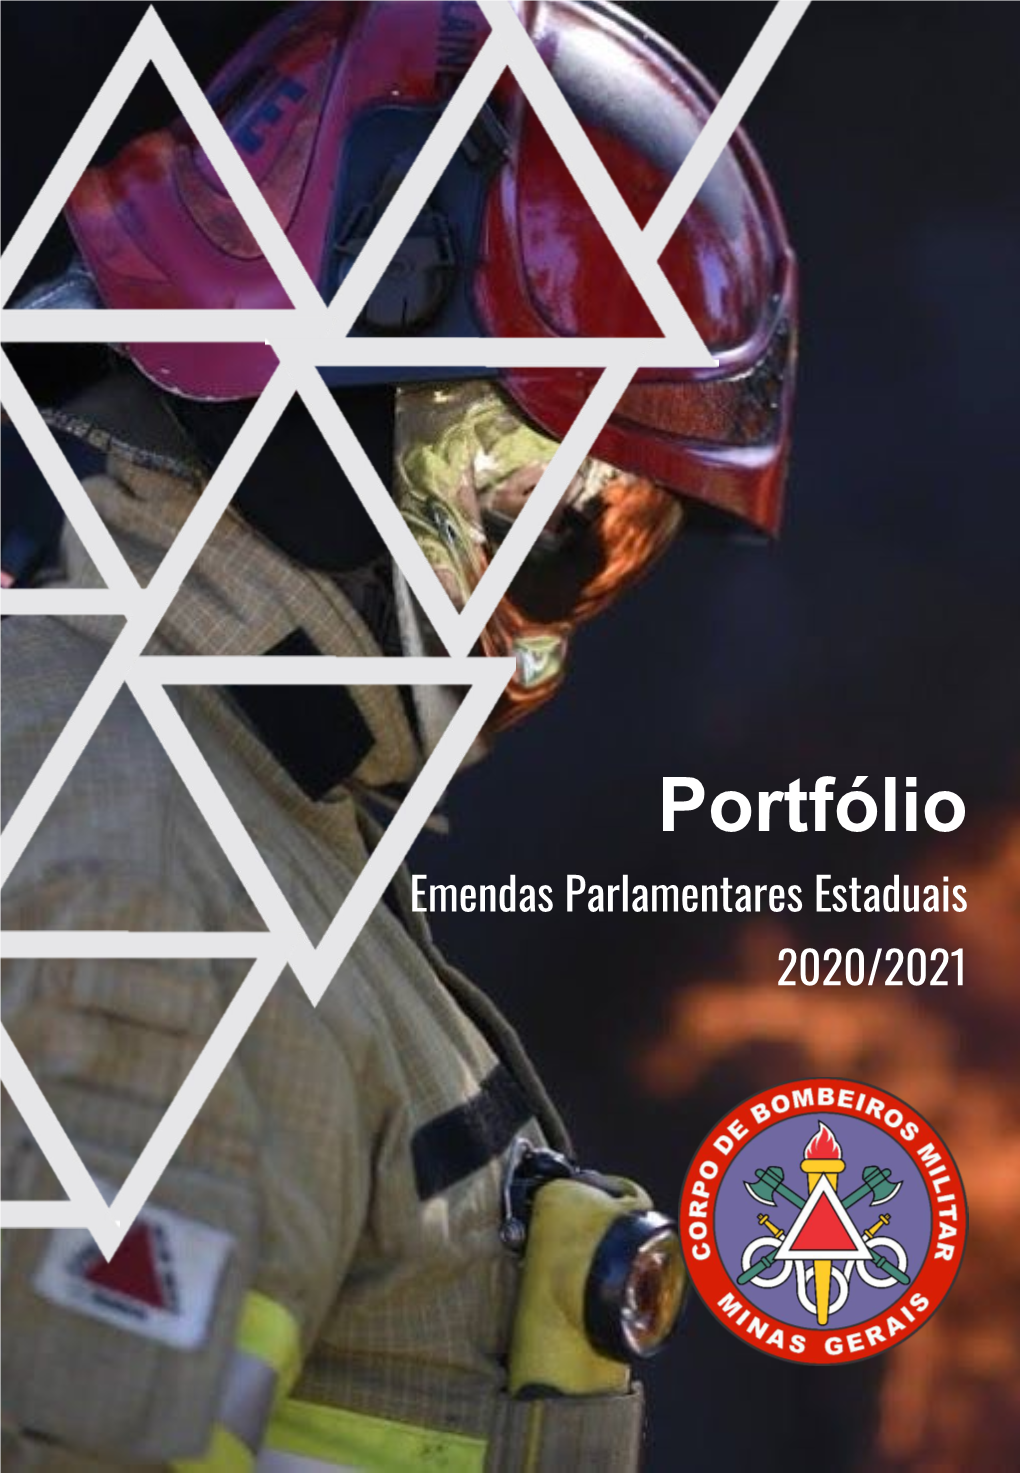 Portfólio Emendas Parlamentares Estaduais 2020/2021 Comandante-Geral: Edgard Estevo Da Silva, Coronel BM